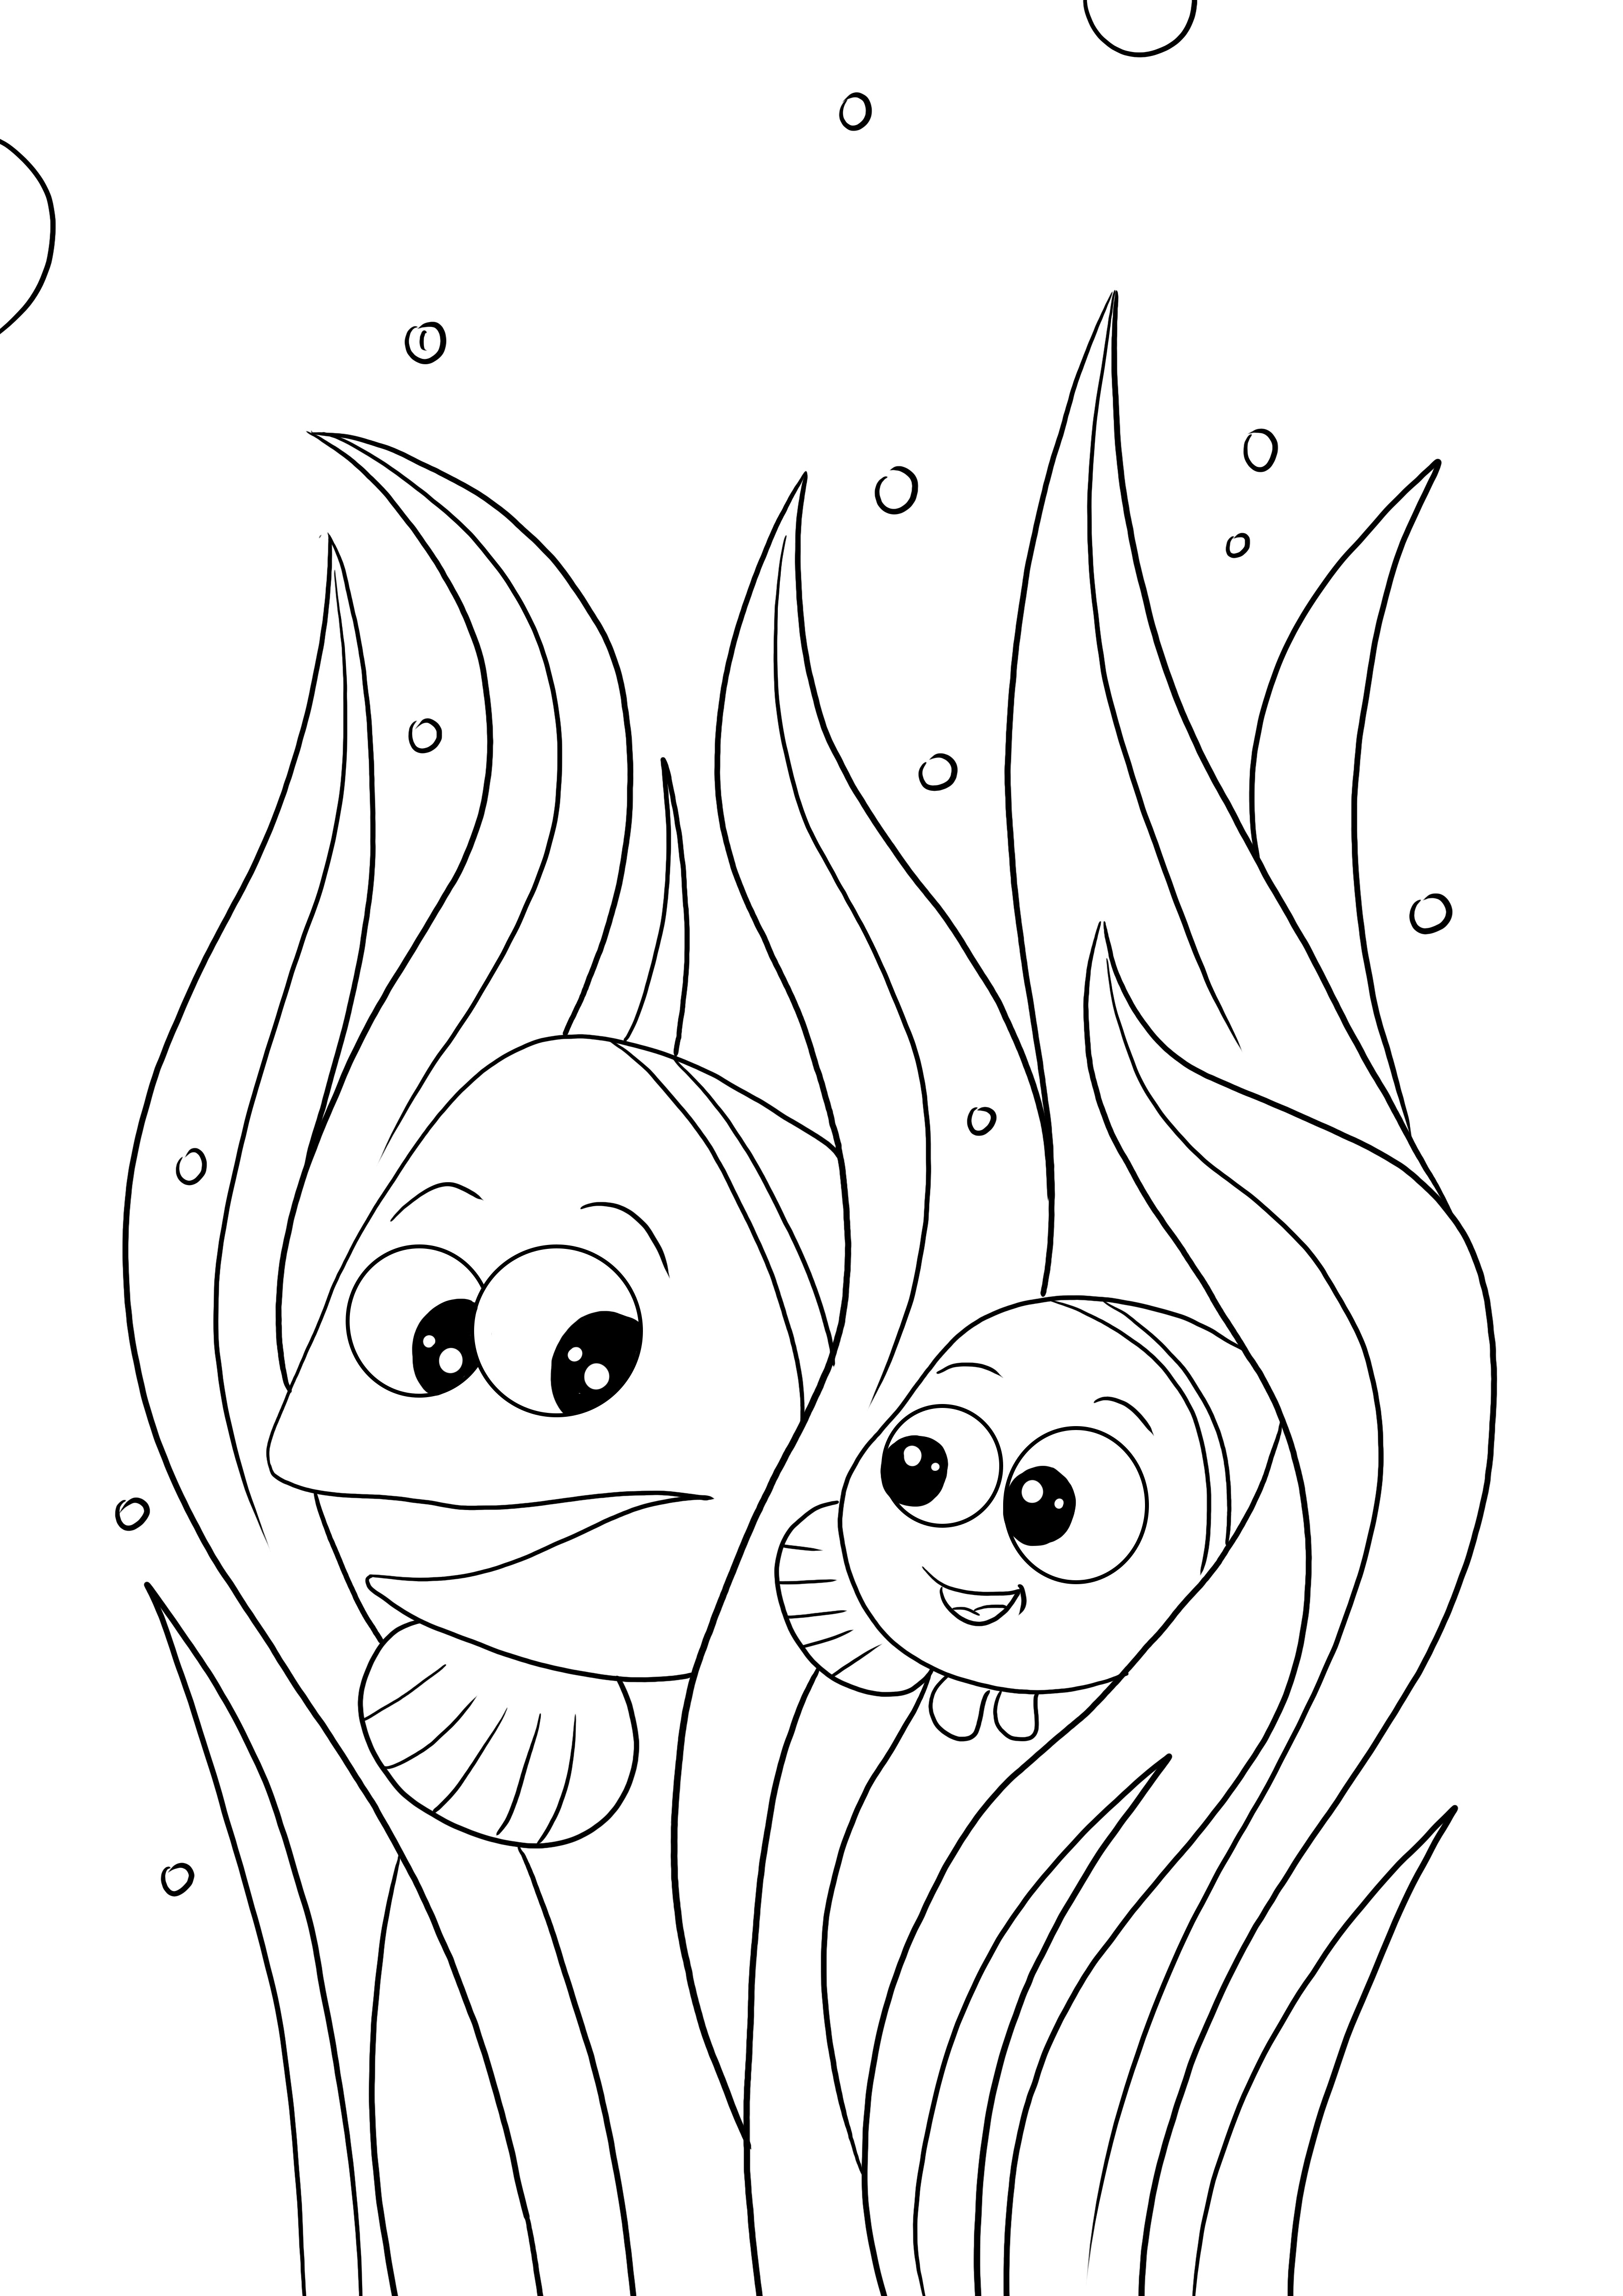 Marlin y Nemo página para colorear e imprimir gratis para niños de todas las edades